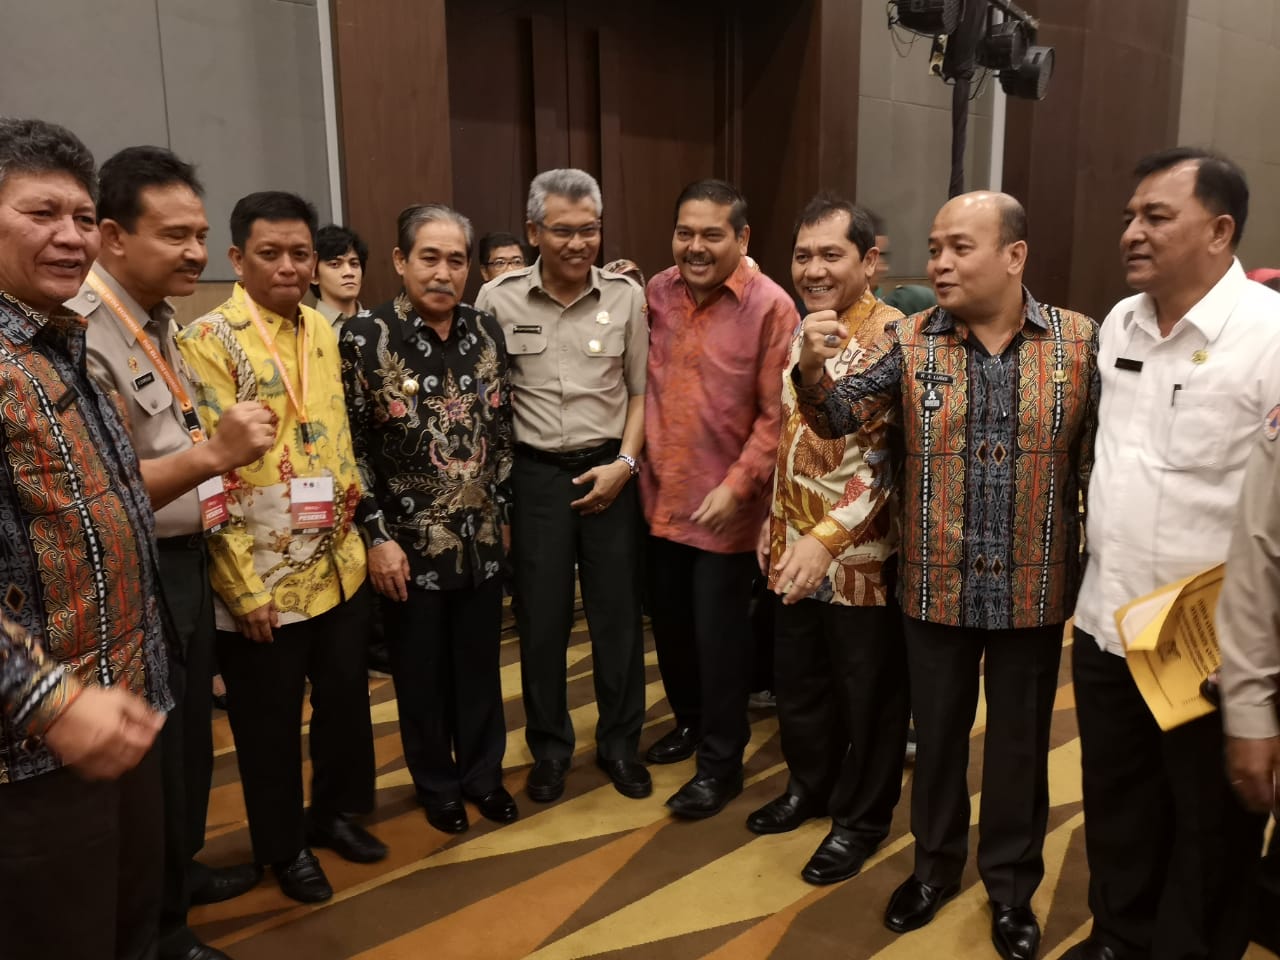 Ket foto : Bupati Karo (baju batik corak daun)  bersama seluruh tamu undangan lainnya dalam kegiatan  Bulan Pengurangan Resiko Bencana Nasional di Medan Sumatera Utara, Rabu (24/10) 2018